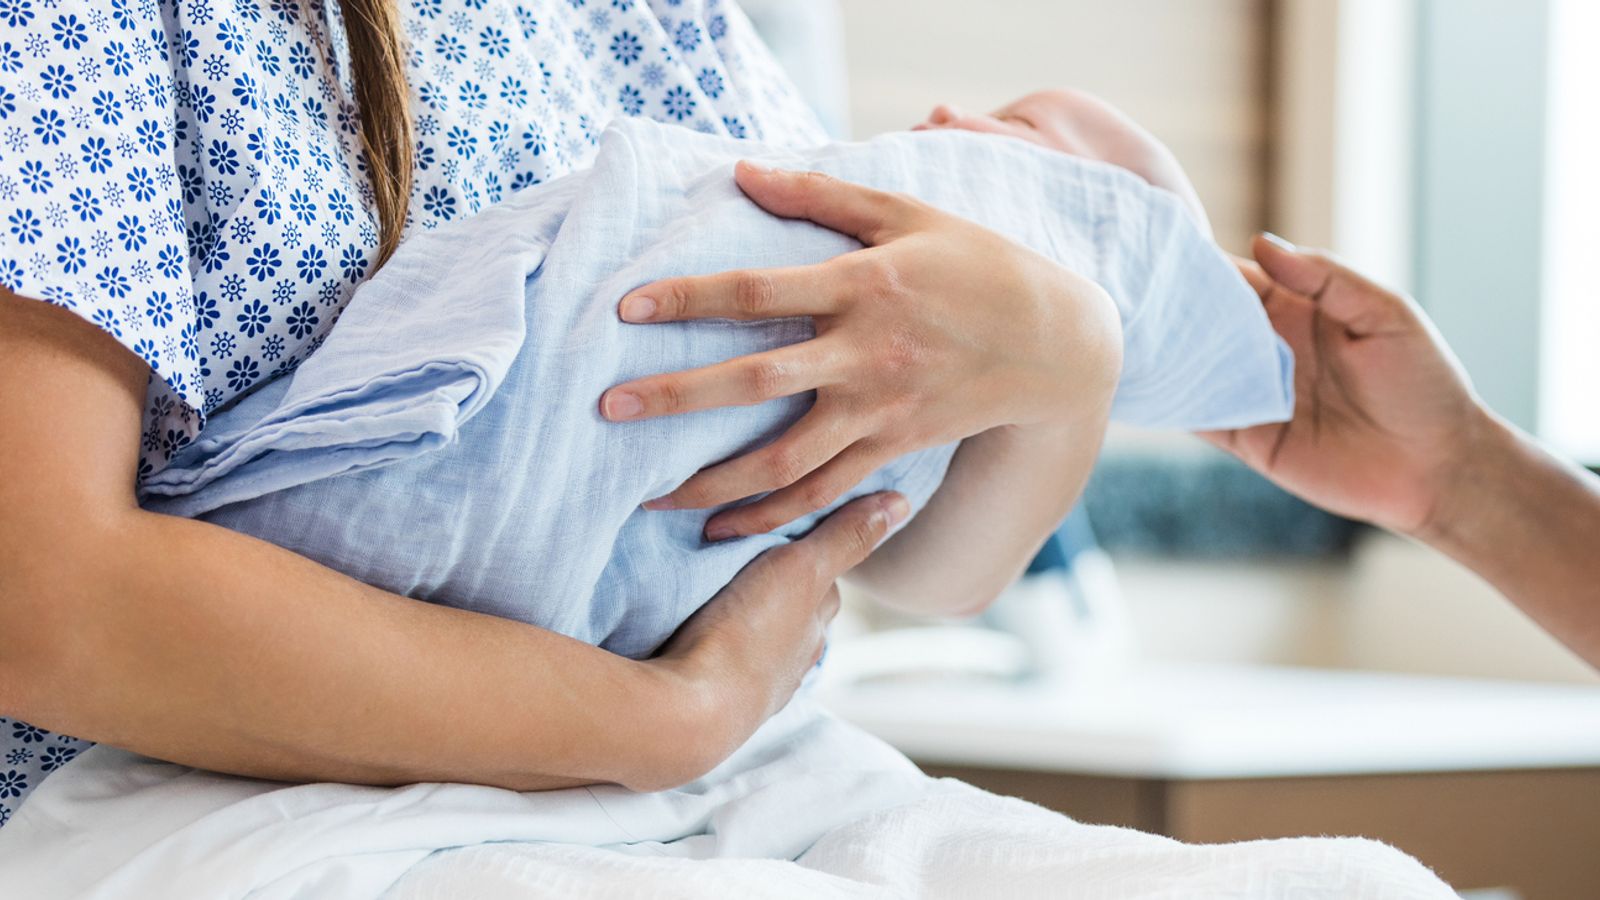 Министърът на здравеопазването се извинява, тъй като докладът за травма при раждане установява „шокиращо лошо качество“ на грижите за майчинство